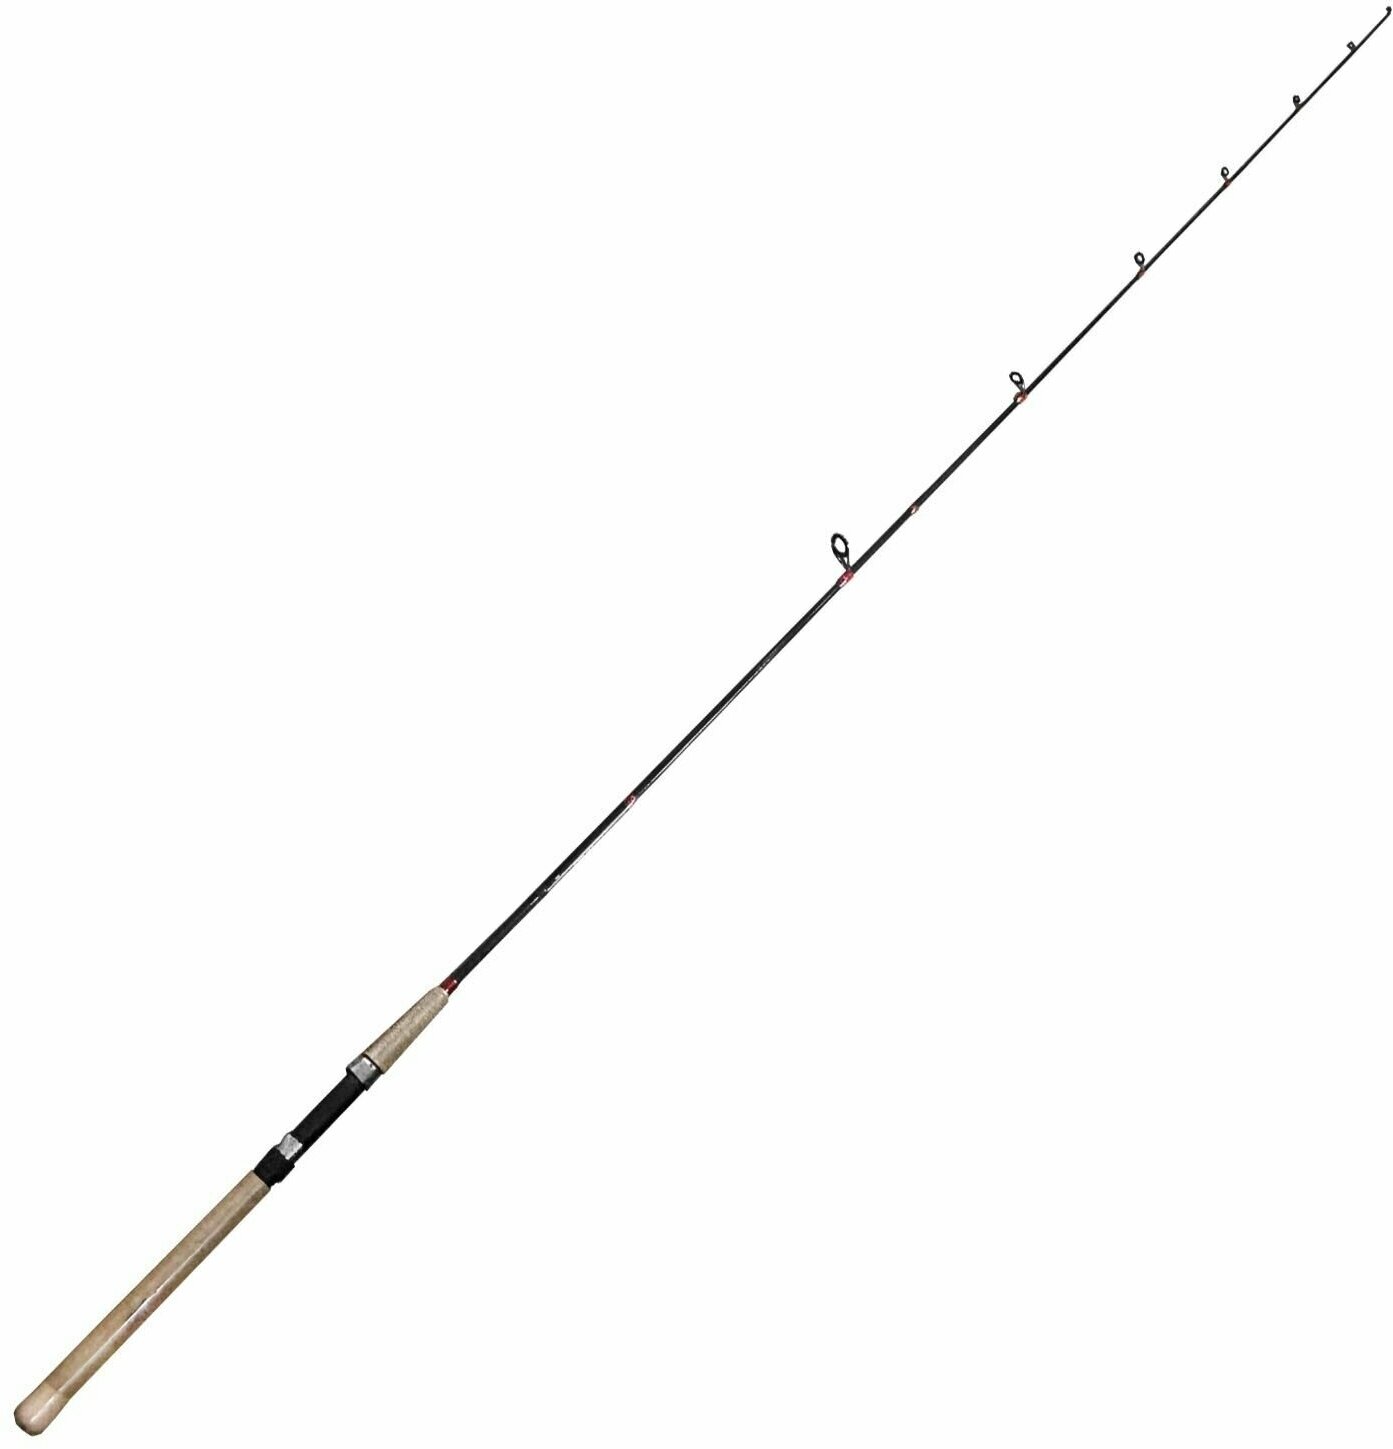 Спиннинг для рыбалки Шимано Катана 210 см 5-25 г. HIGH CARBON-Сверхлегкий